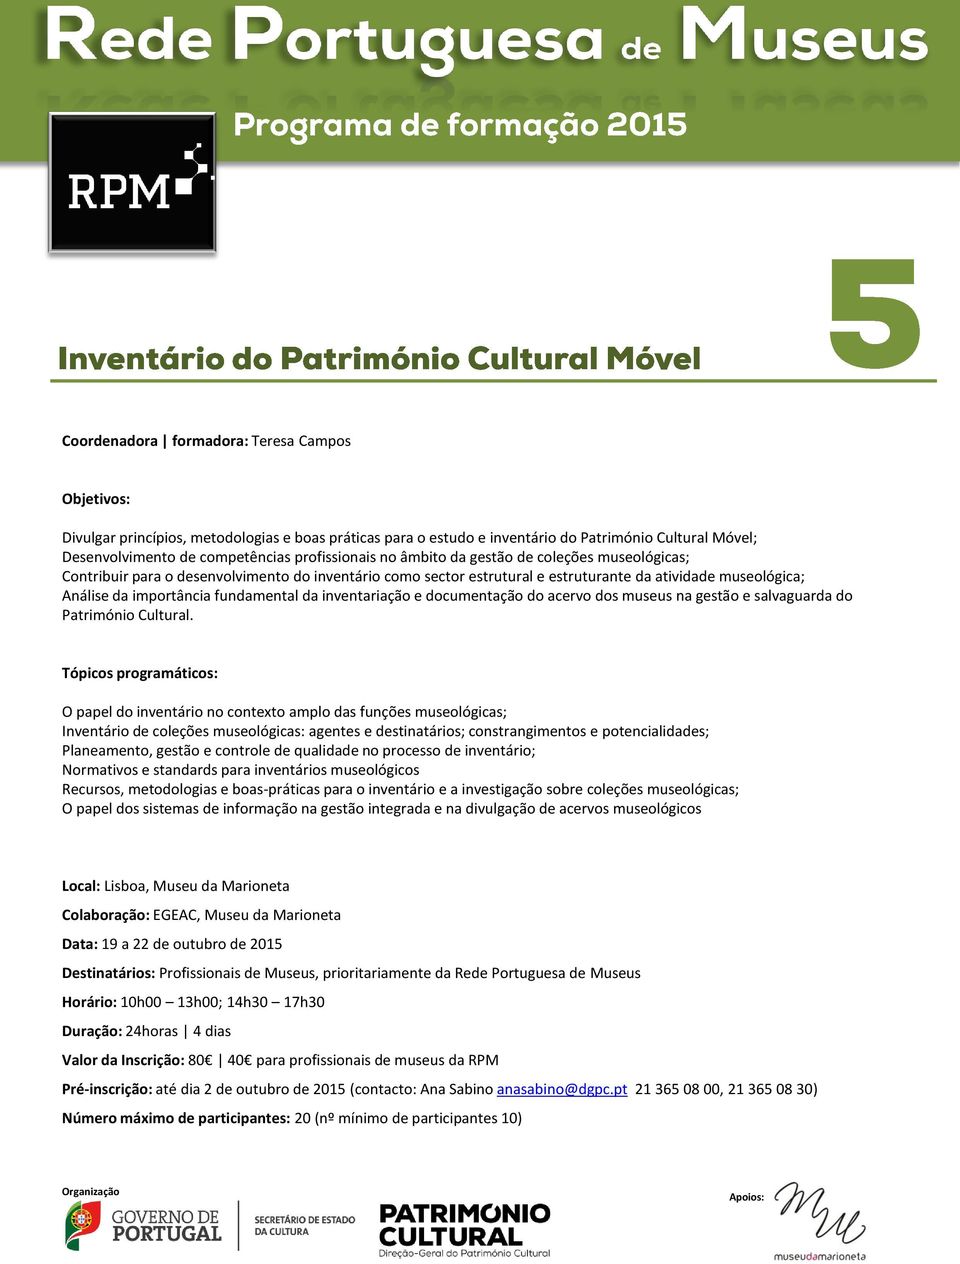 inventariação e documentação do acervo dos museus na gestão e salvaguarda do Património Cultural.